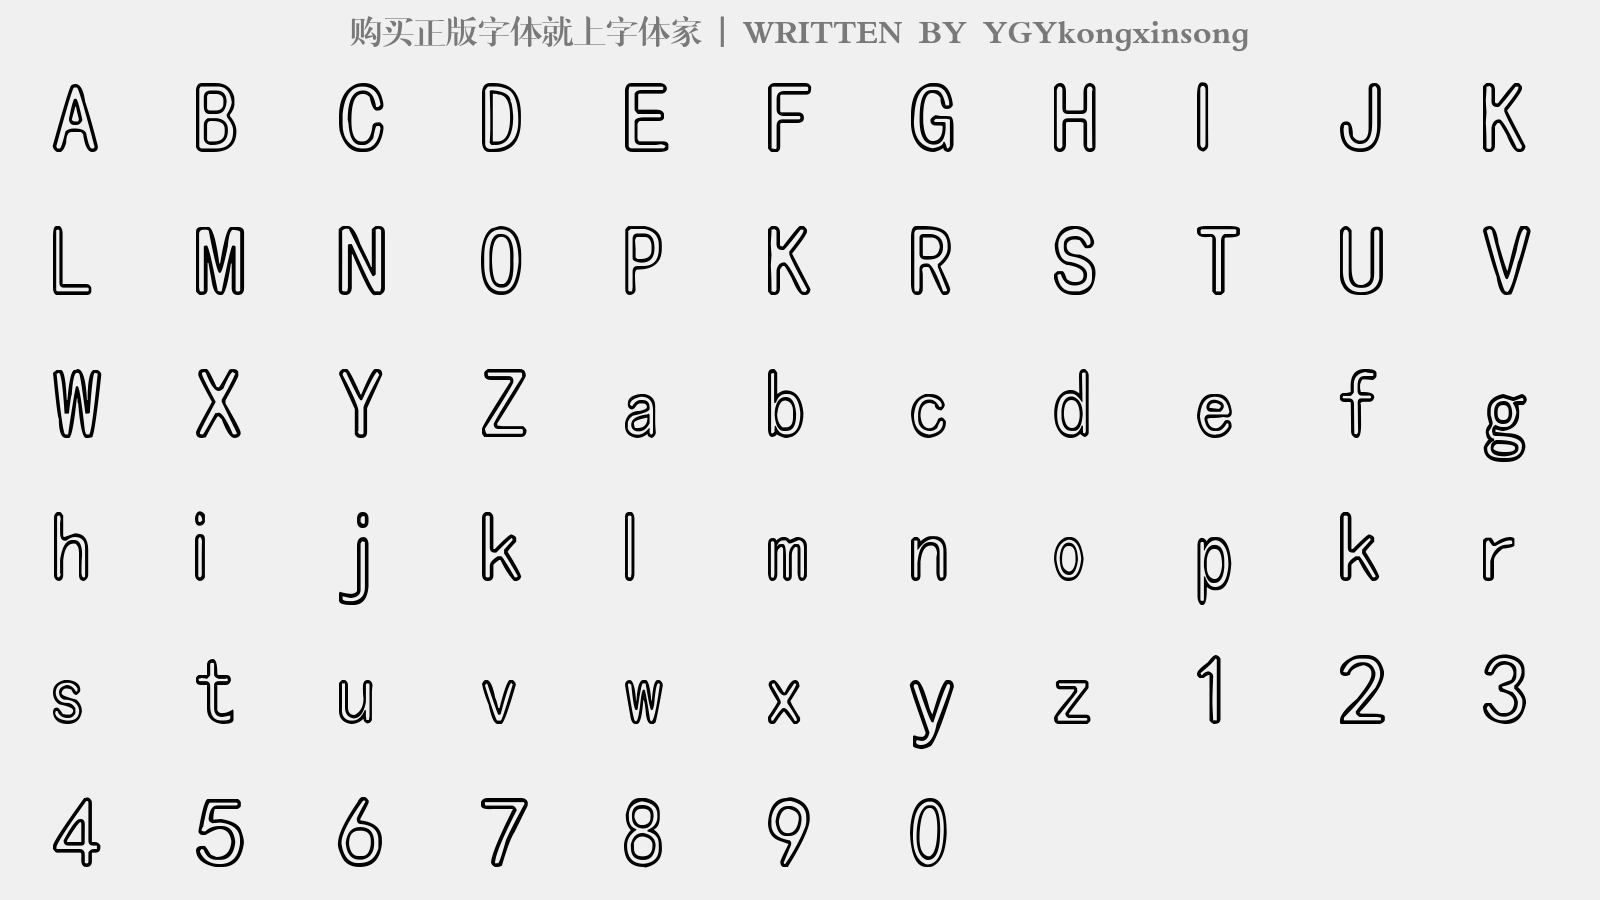 YGYkongxinsong - 大写字母/小写字母/数字